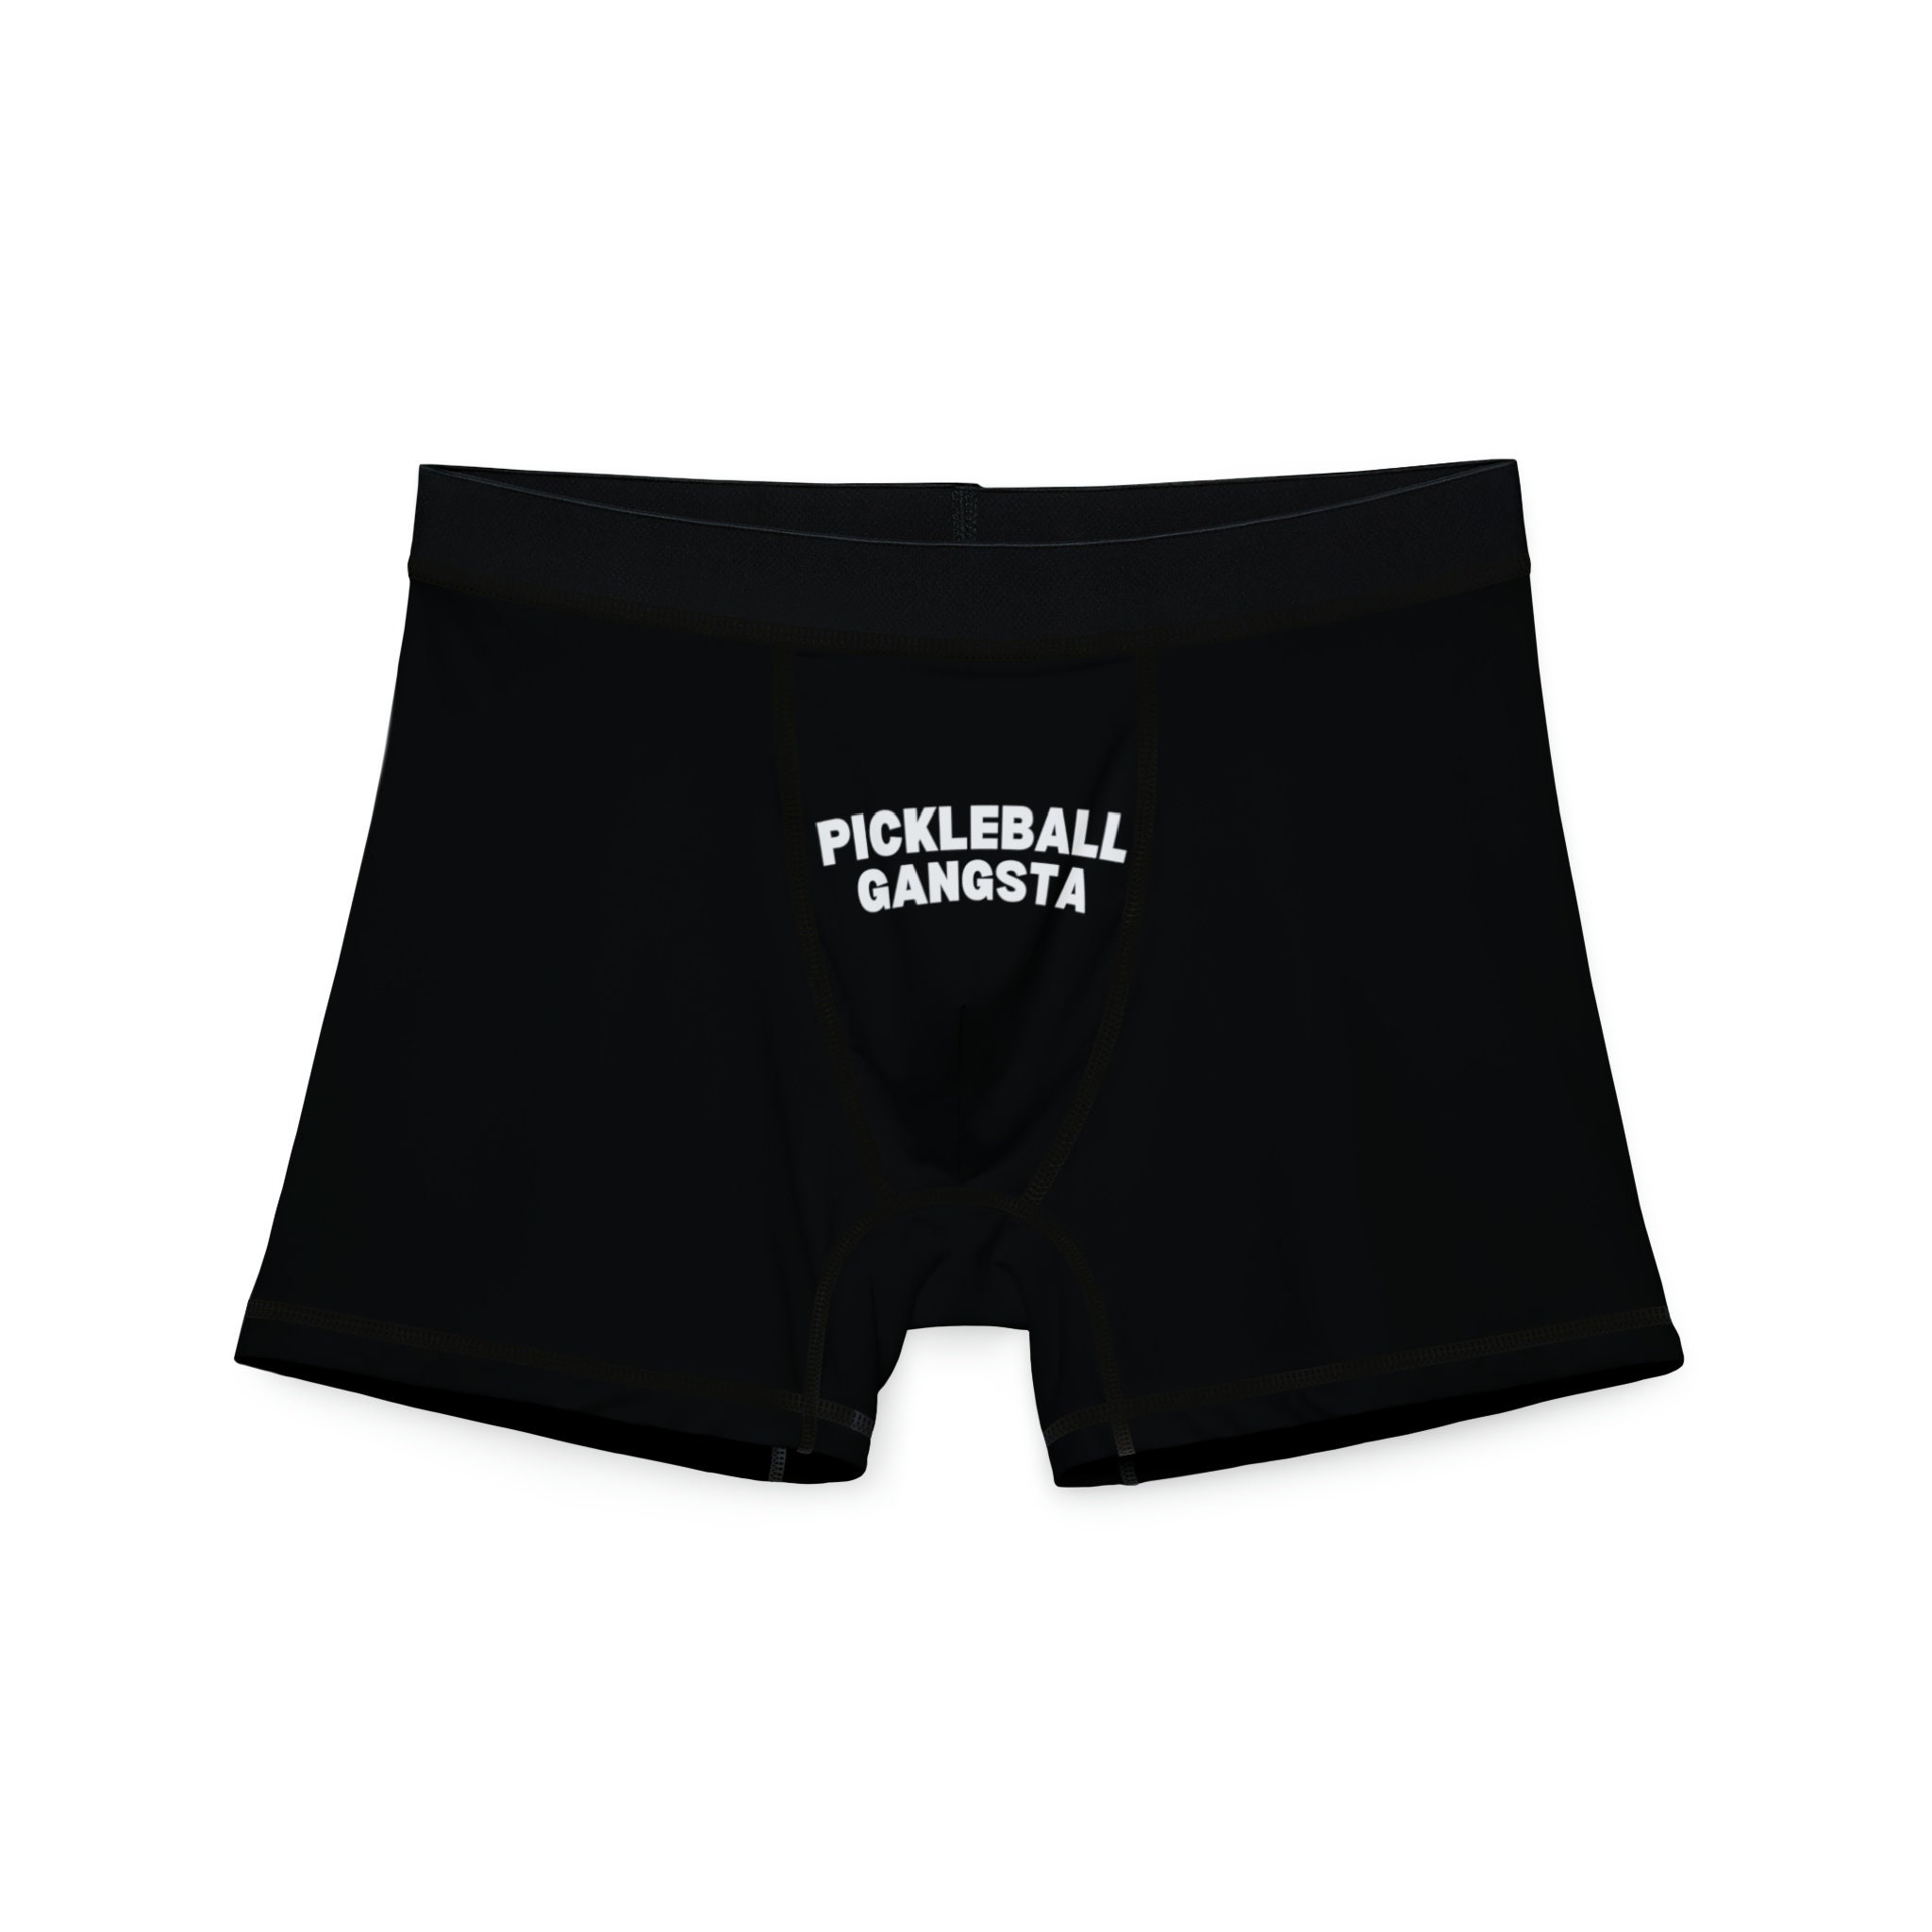 Pickleball Gangsta Men's Boxers, Funny Gift for Him